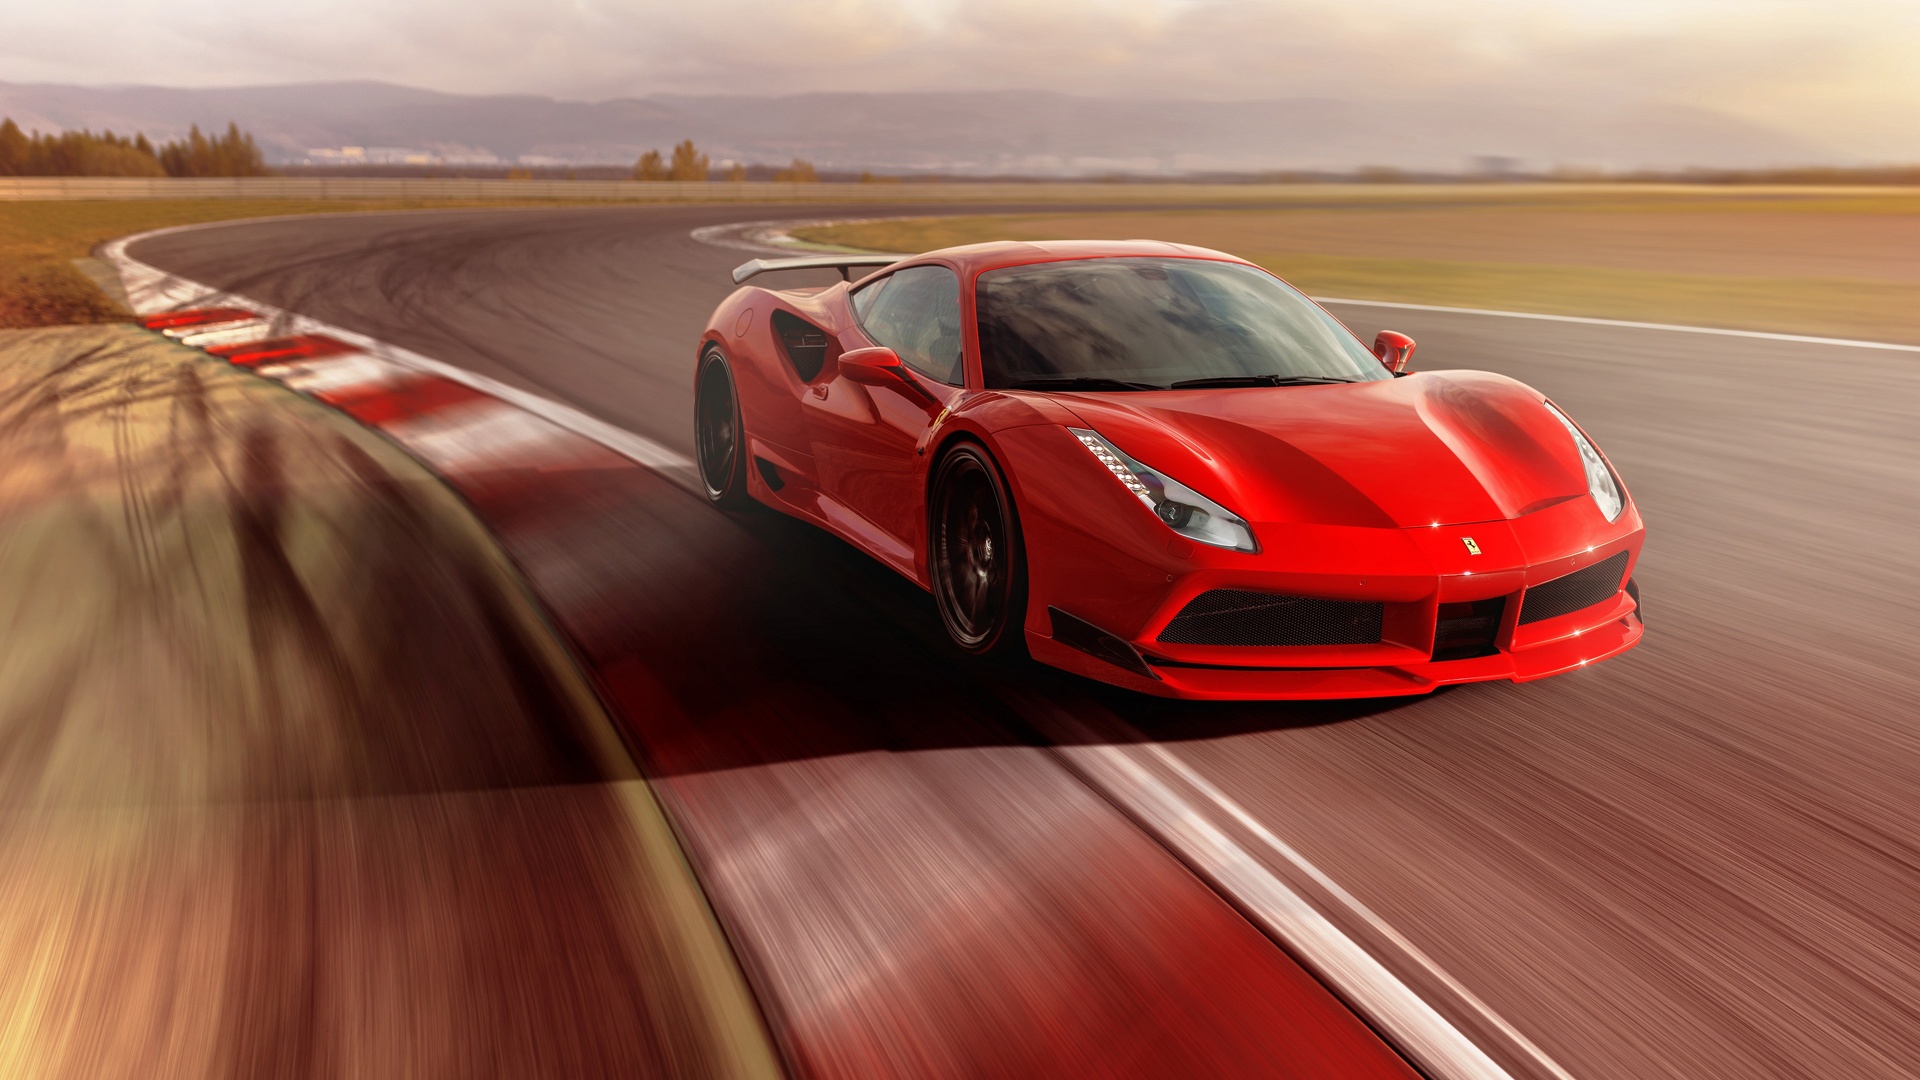 Fond d'écran - Ferrari F8 tributo.jpg